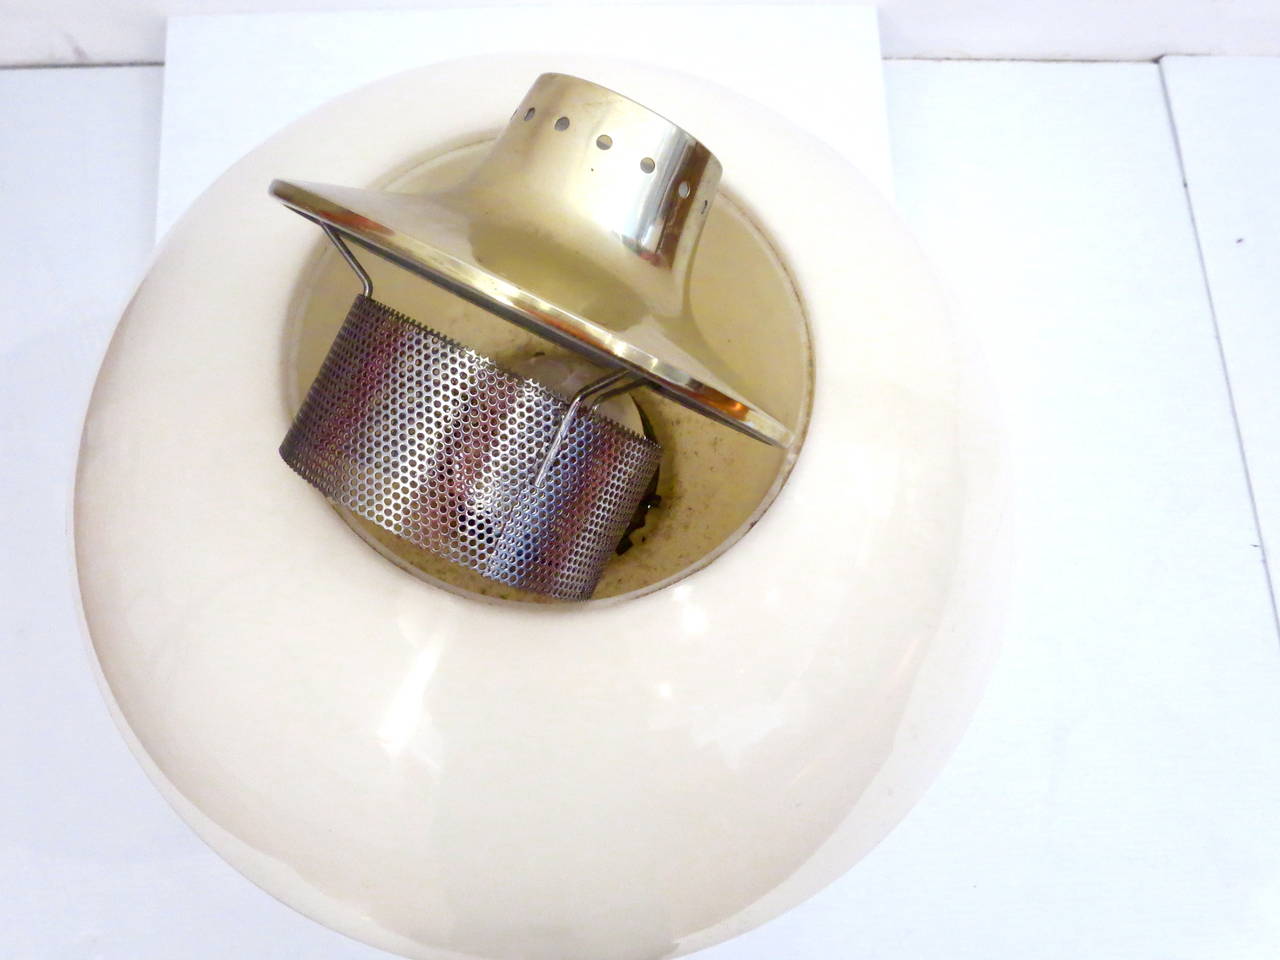 American Rare Desk Lamp Designed by Gerald Thurston for Lightolier